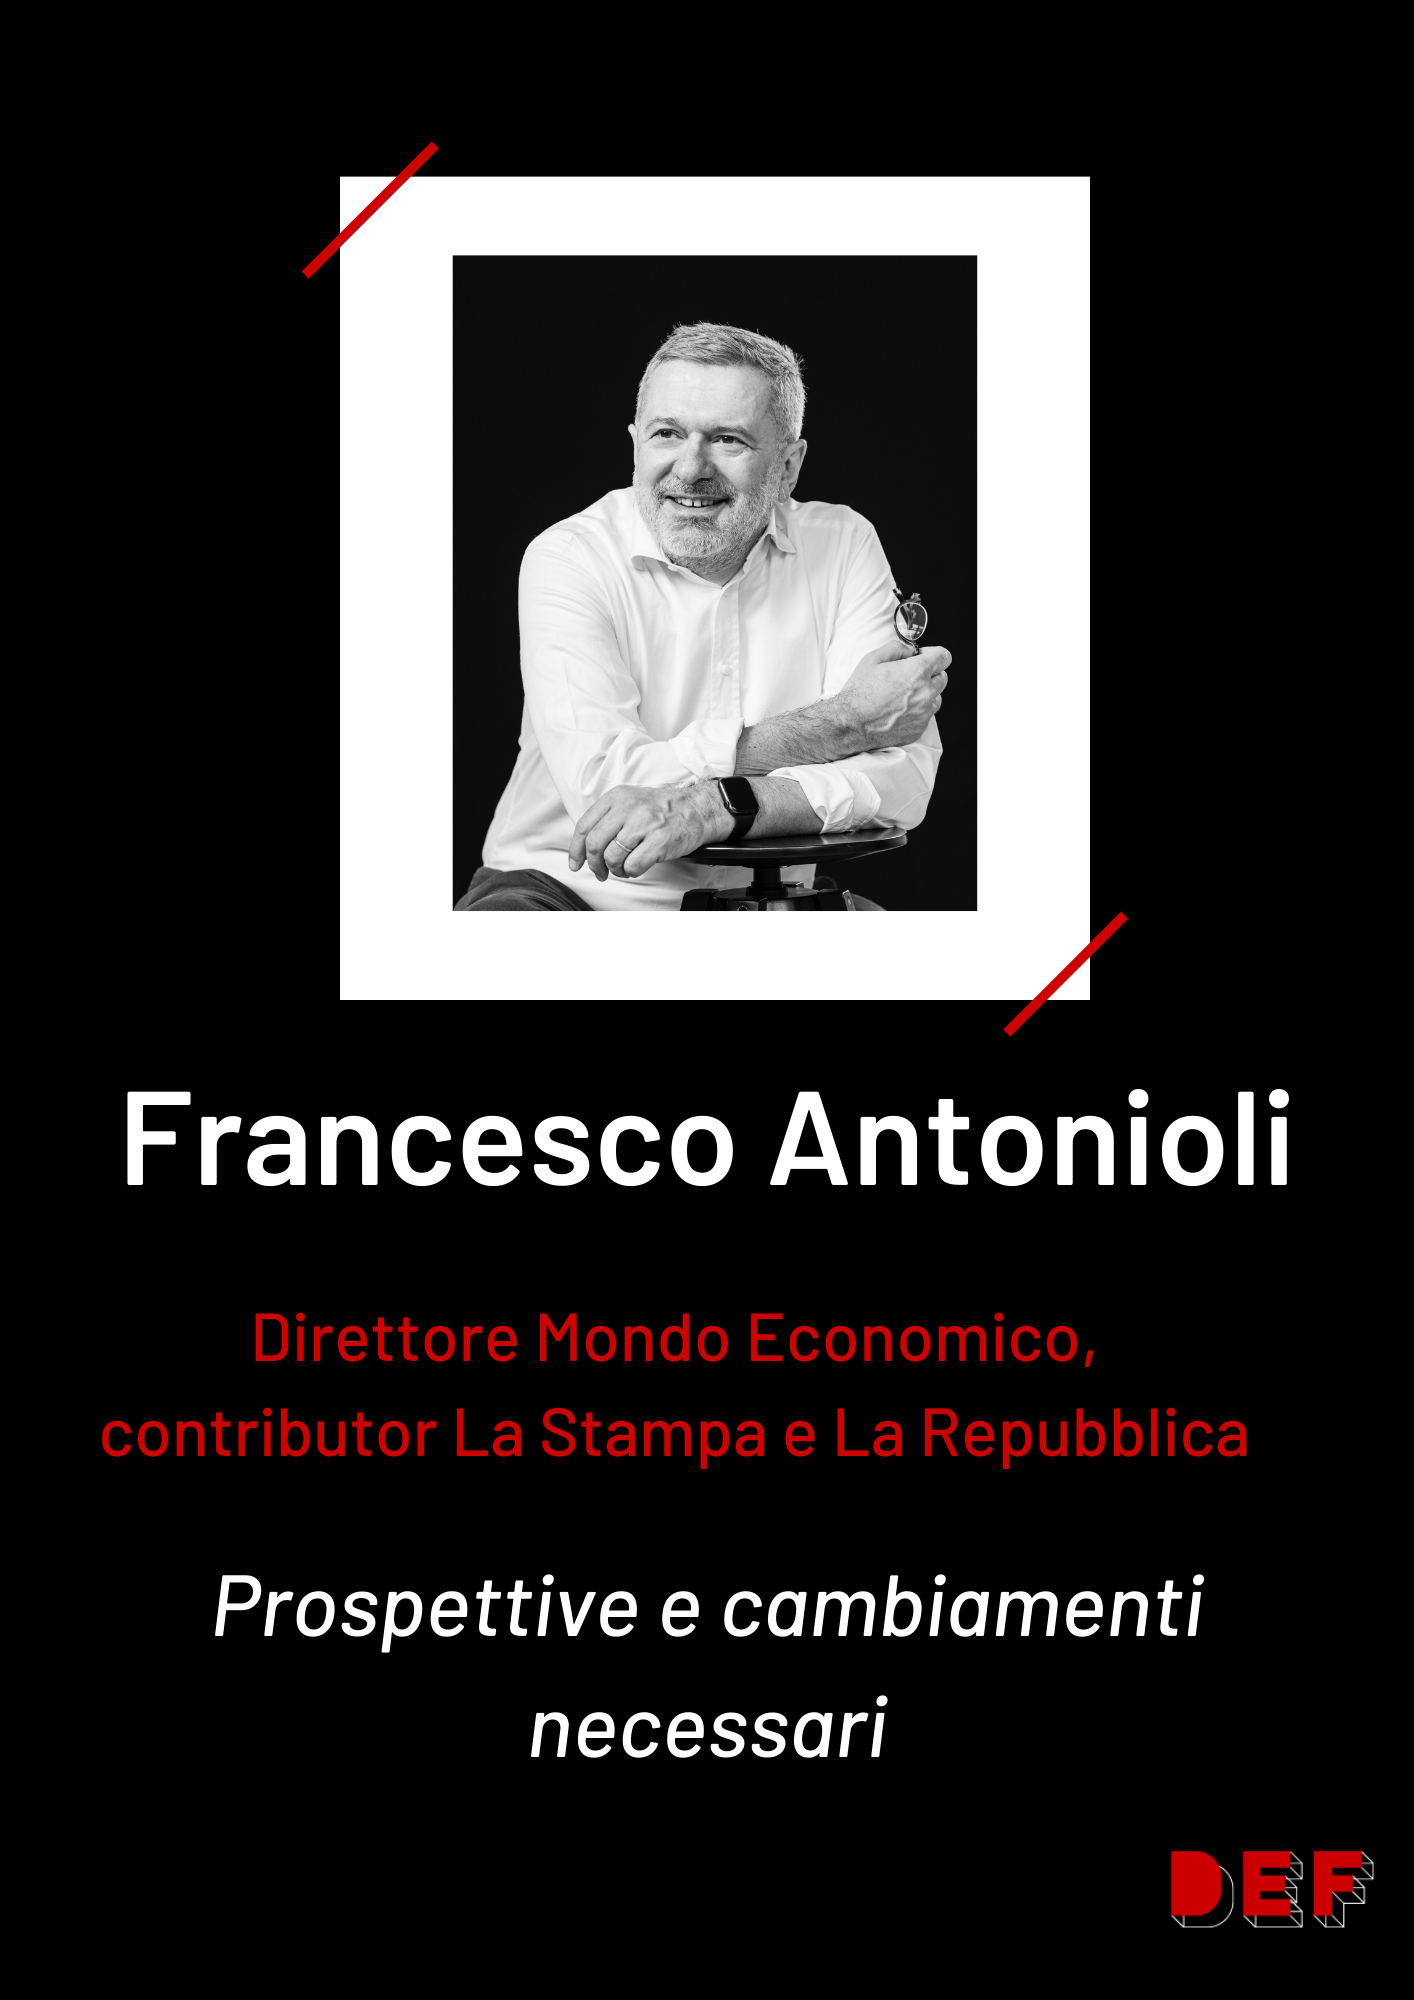 card Francesco Antonioli - DEF23